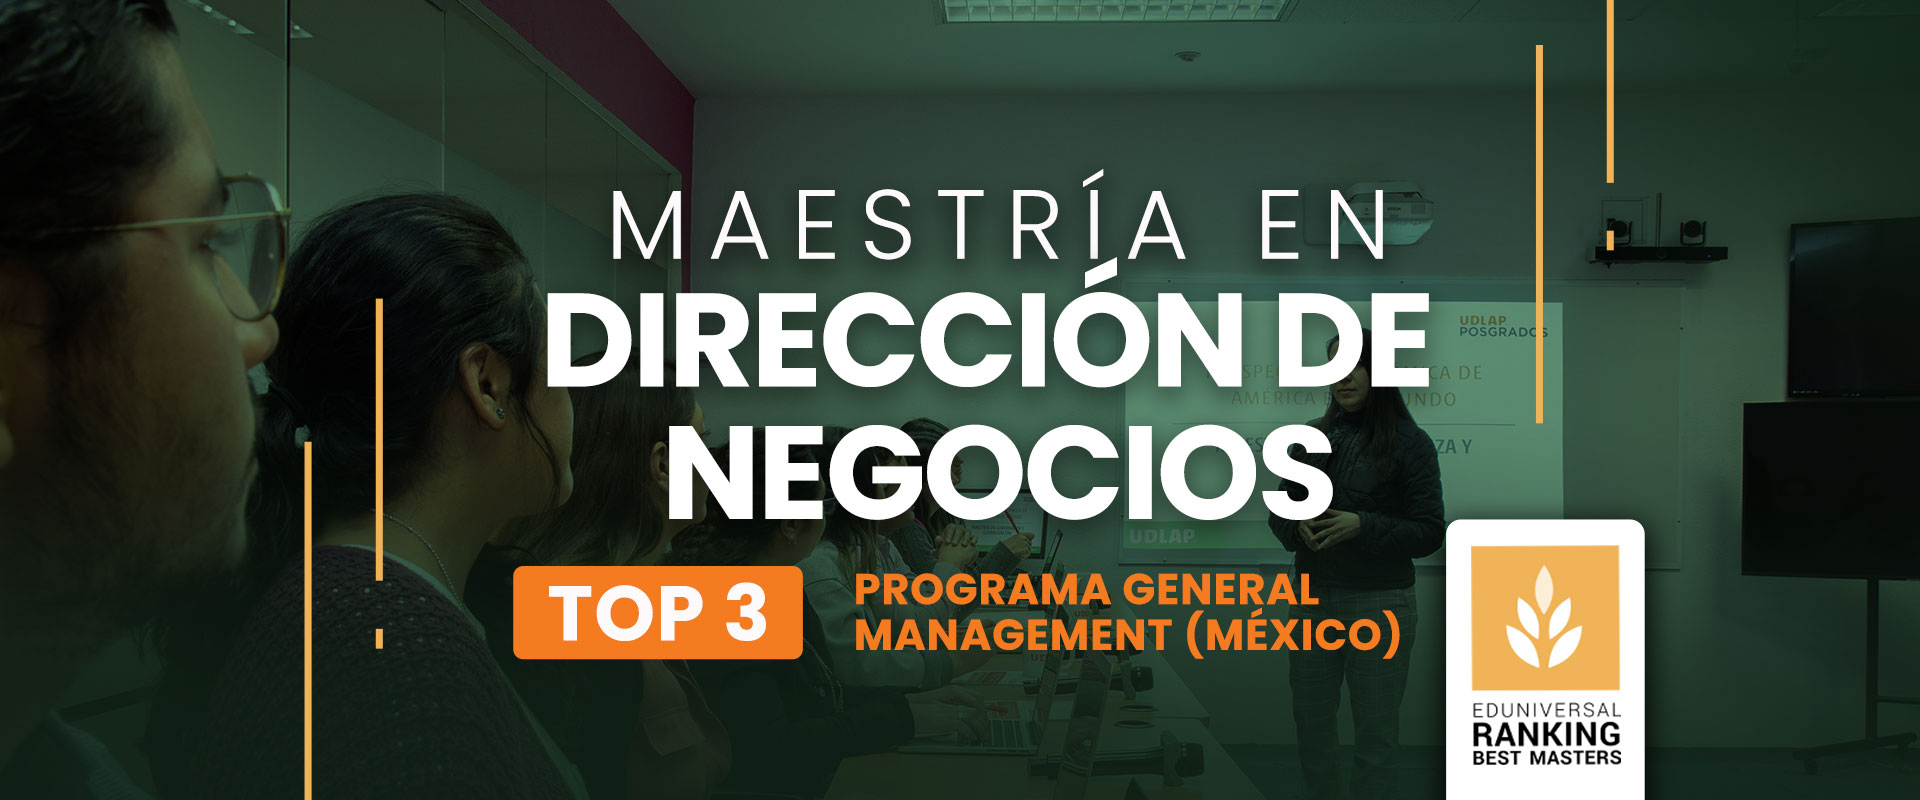 Maestría en Dirección de Negocios - Universidad de las Américas Puebla (UDLAP)